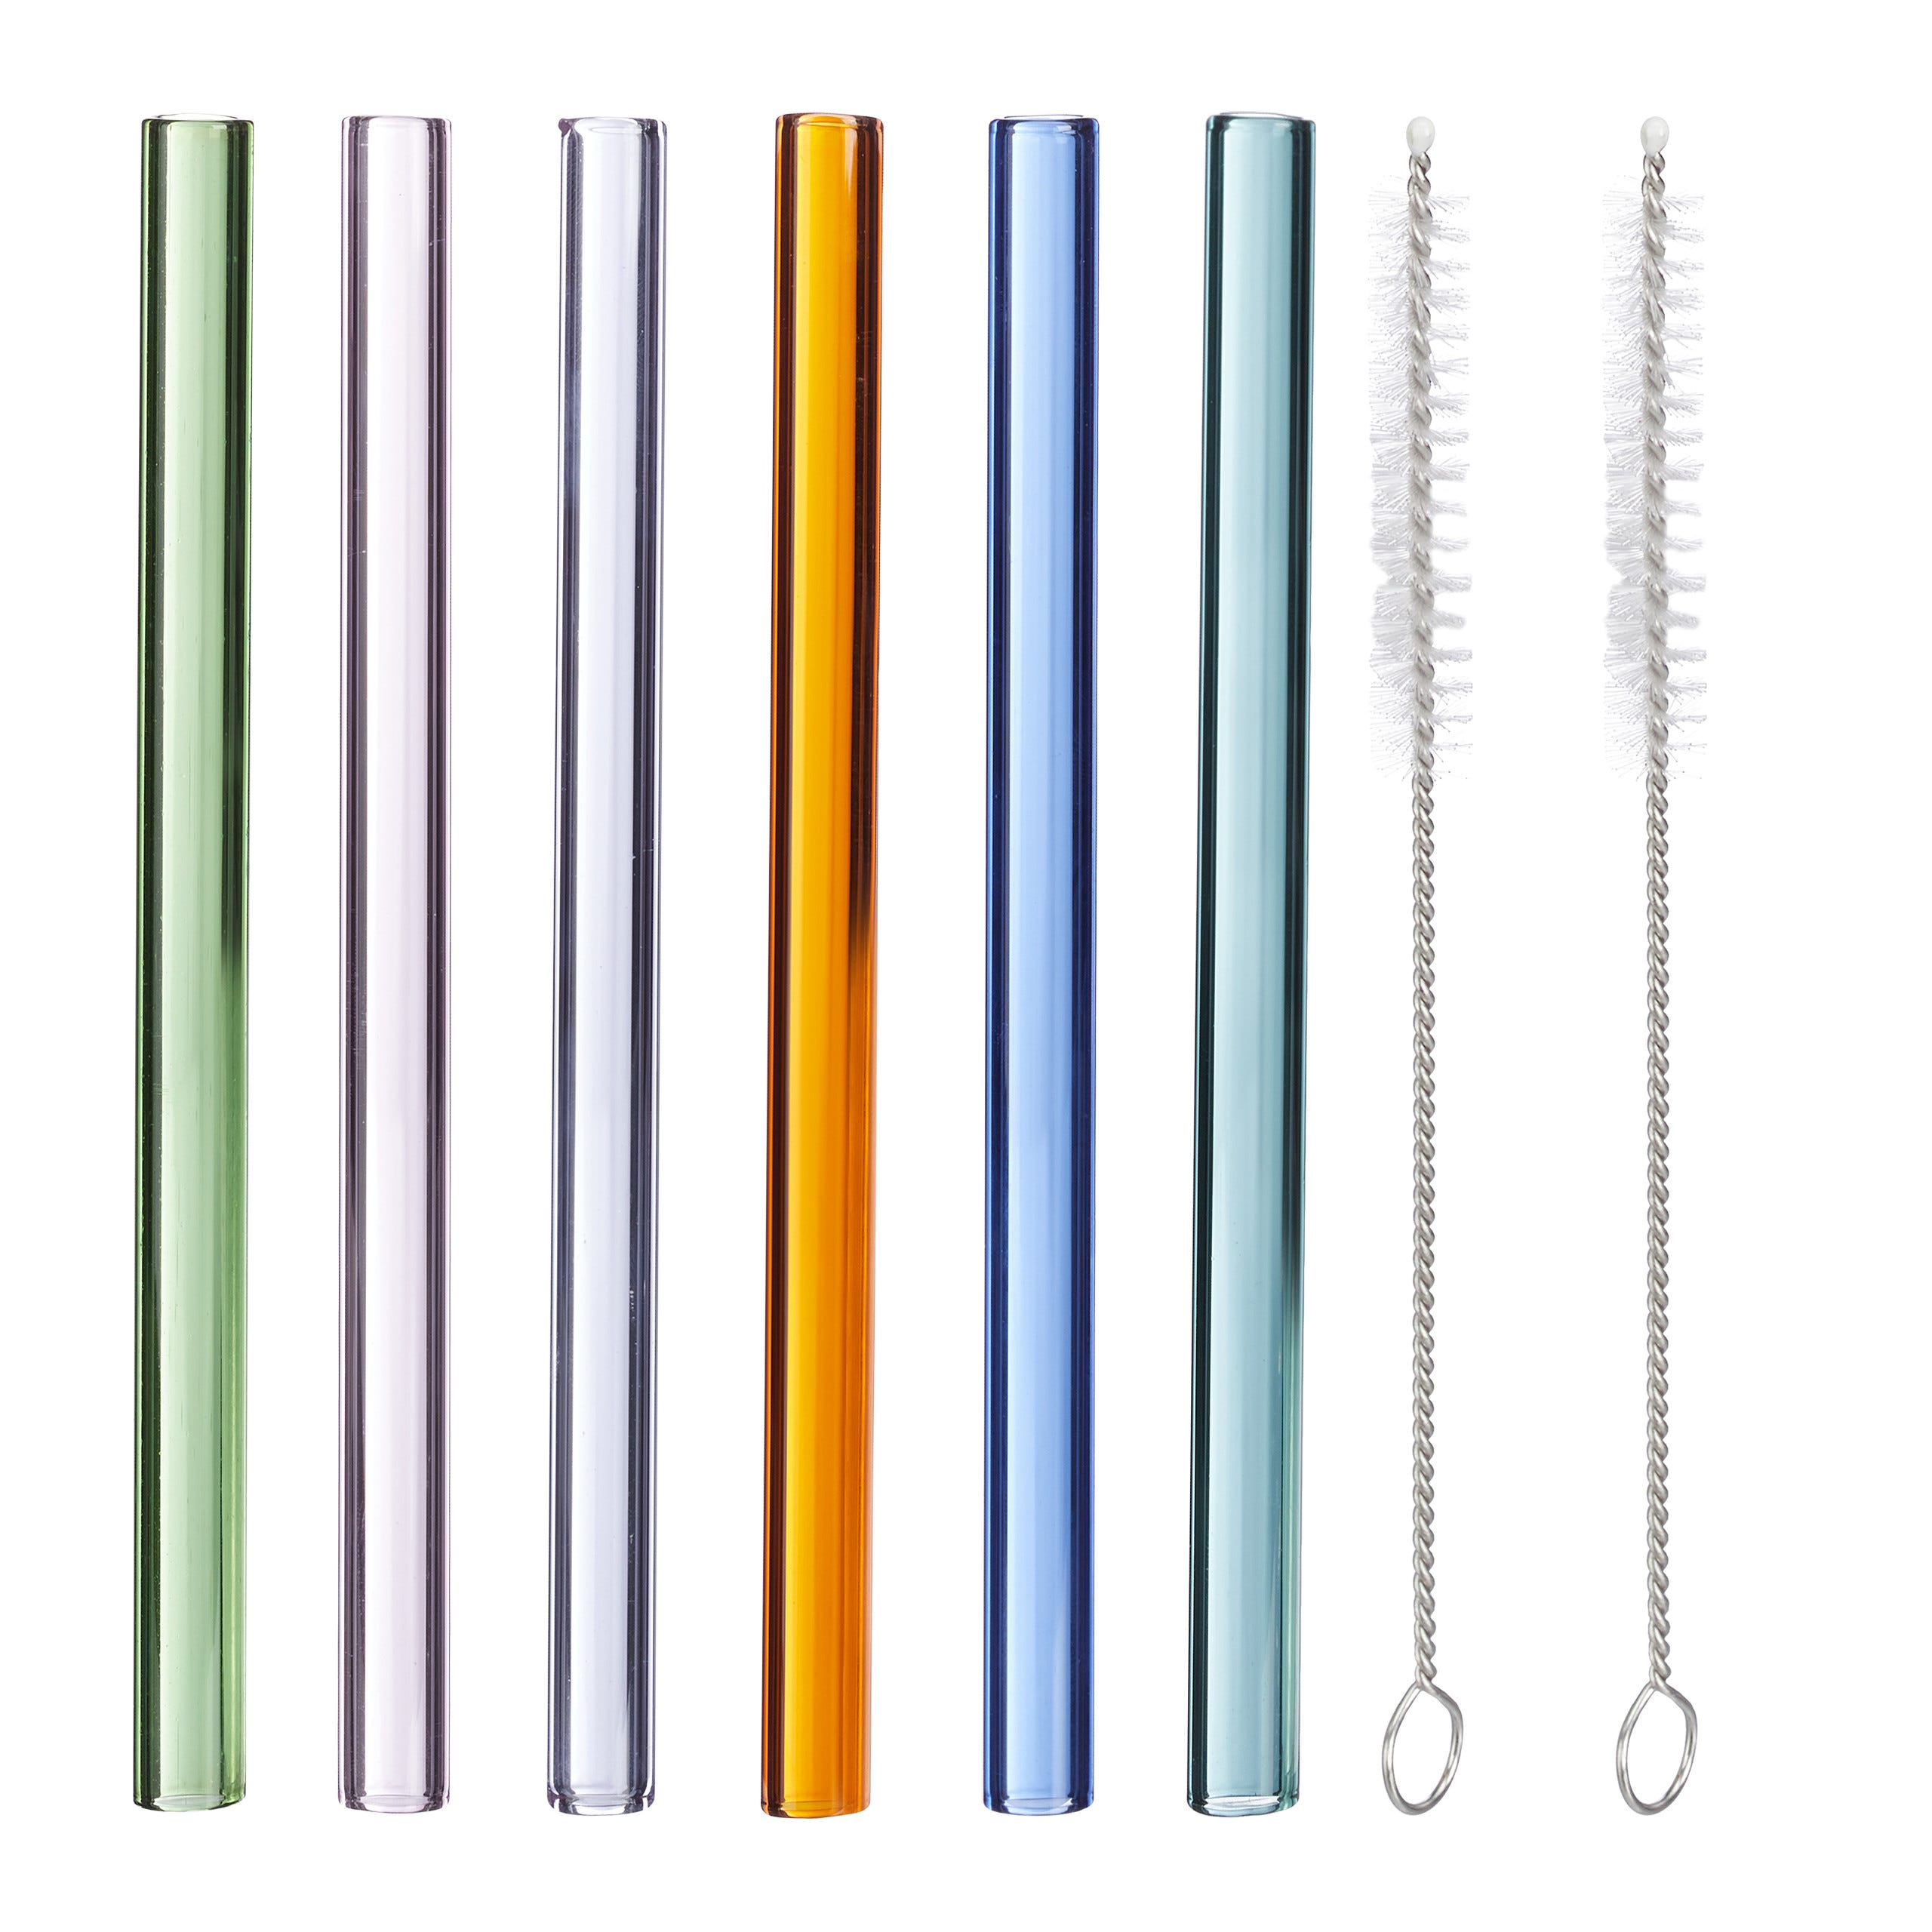 6x Cannucce Riutilizzabili in Vetro, Reusable Straws, Spazzola per Pulizia,  15 cm, Diametro: 10 mm, Colorate